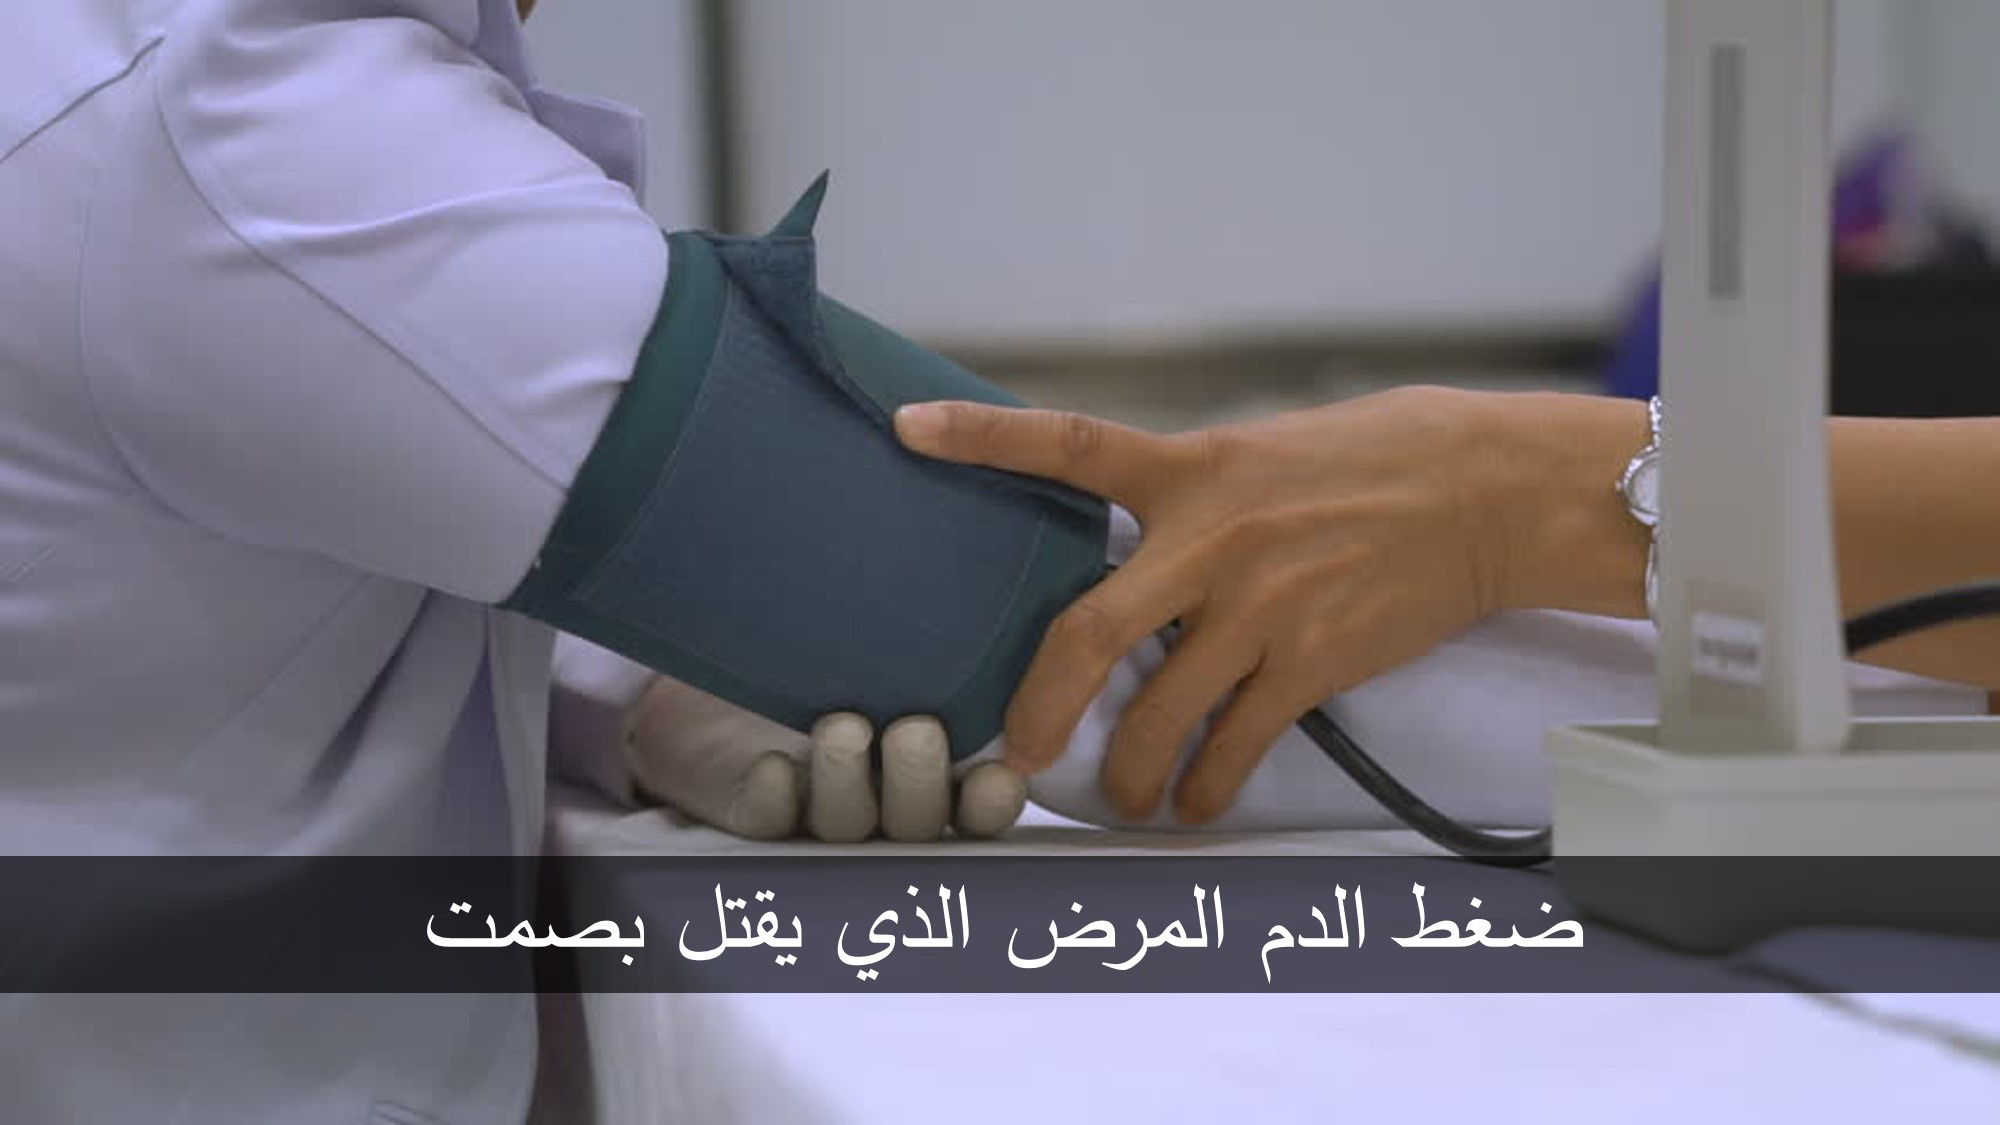 ضغط الدم المرض الذي يقتل بصمت ترندز عرب